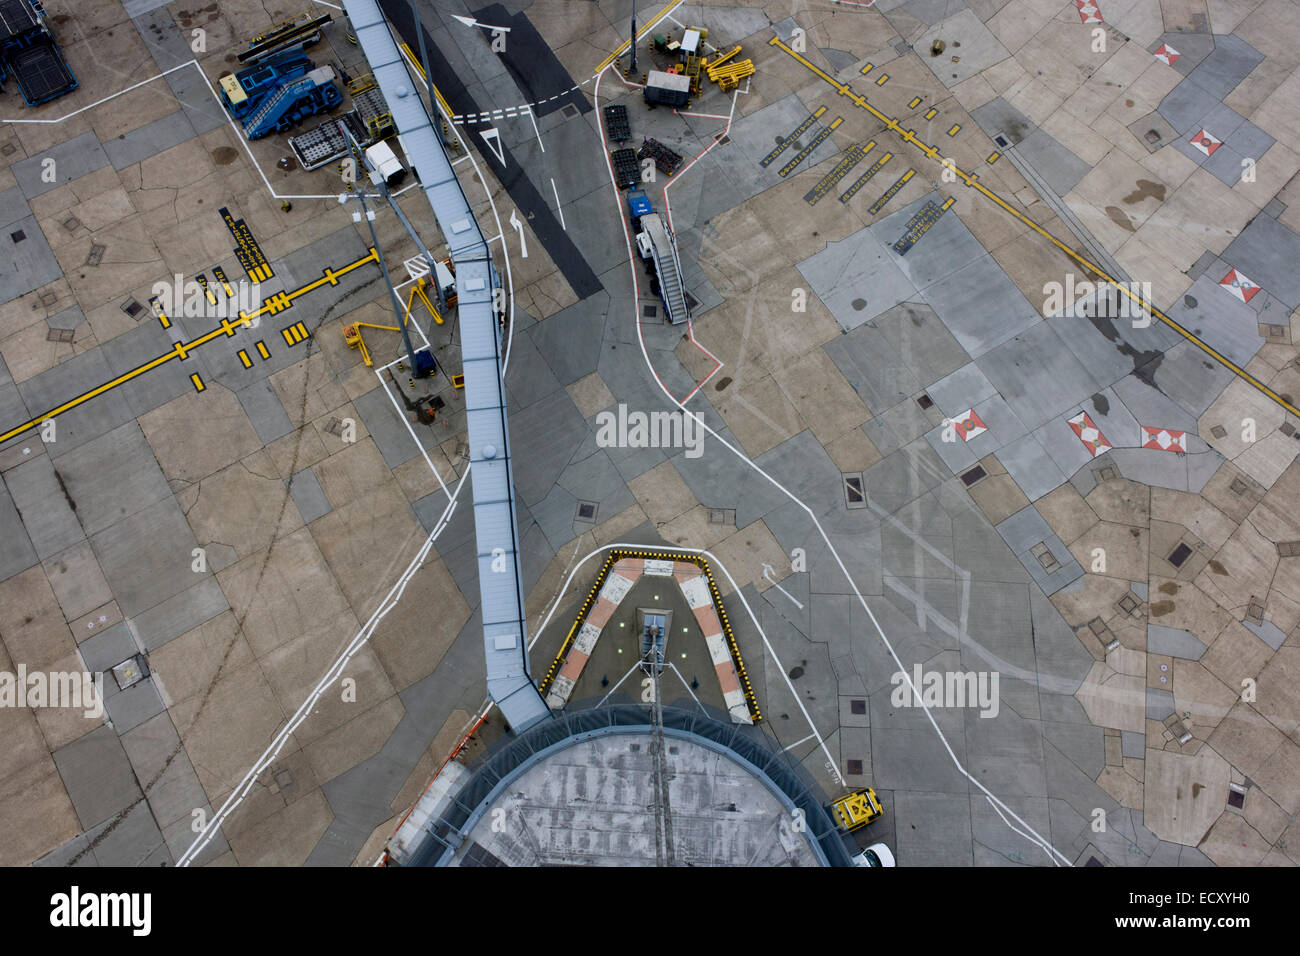 Vue aérienne de haute (tour de contrôle) de l'aéroport d'Heathrow sur l'aviation paysage de béton. Banque D'Images